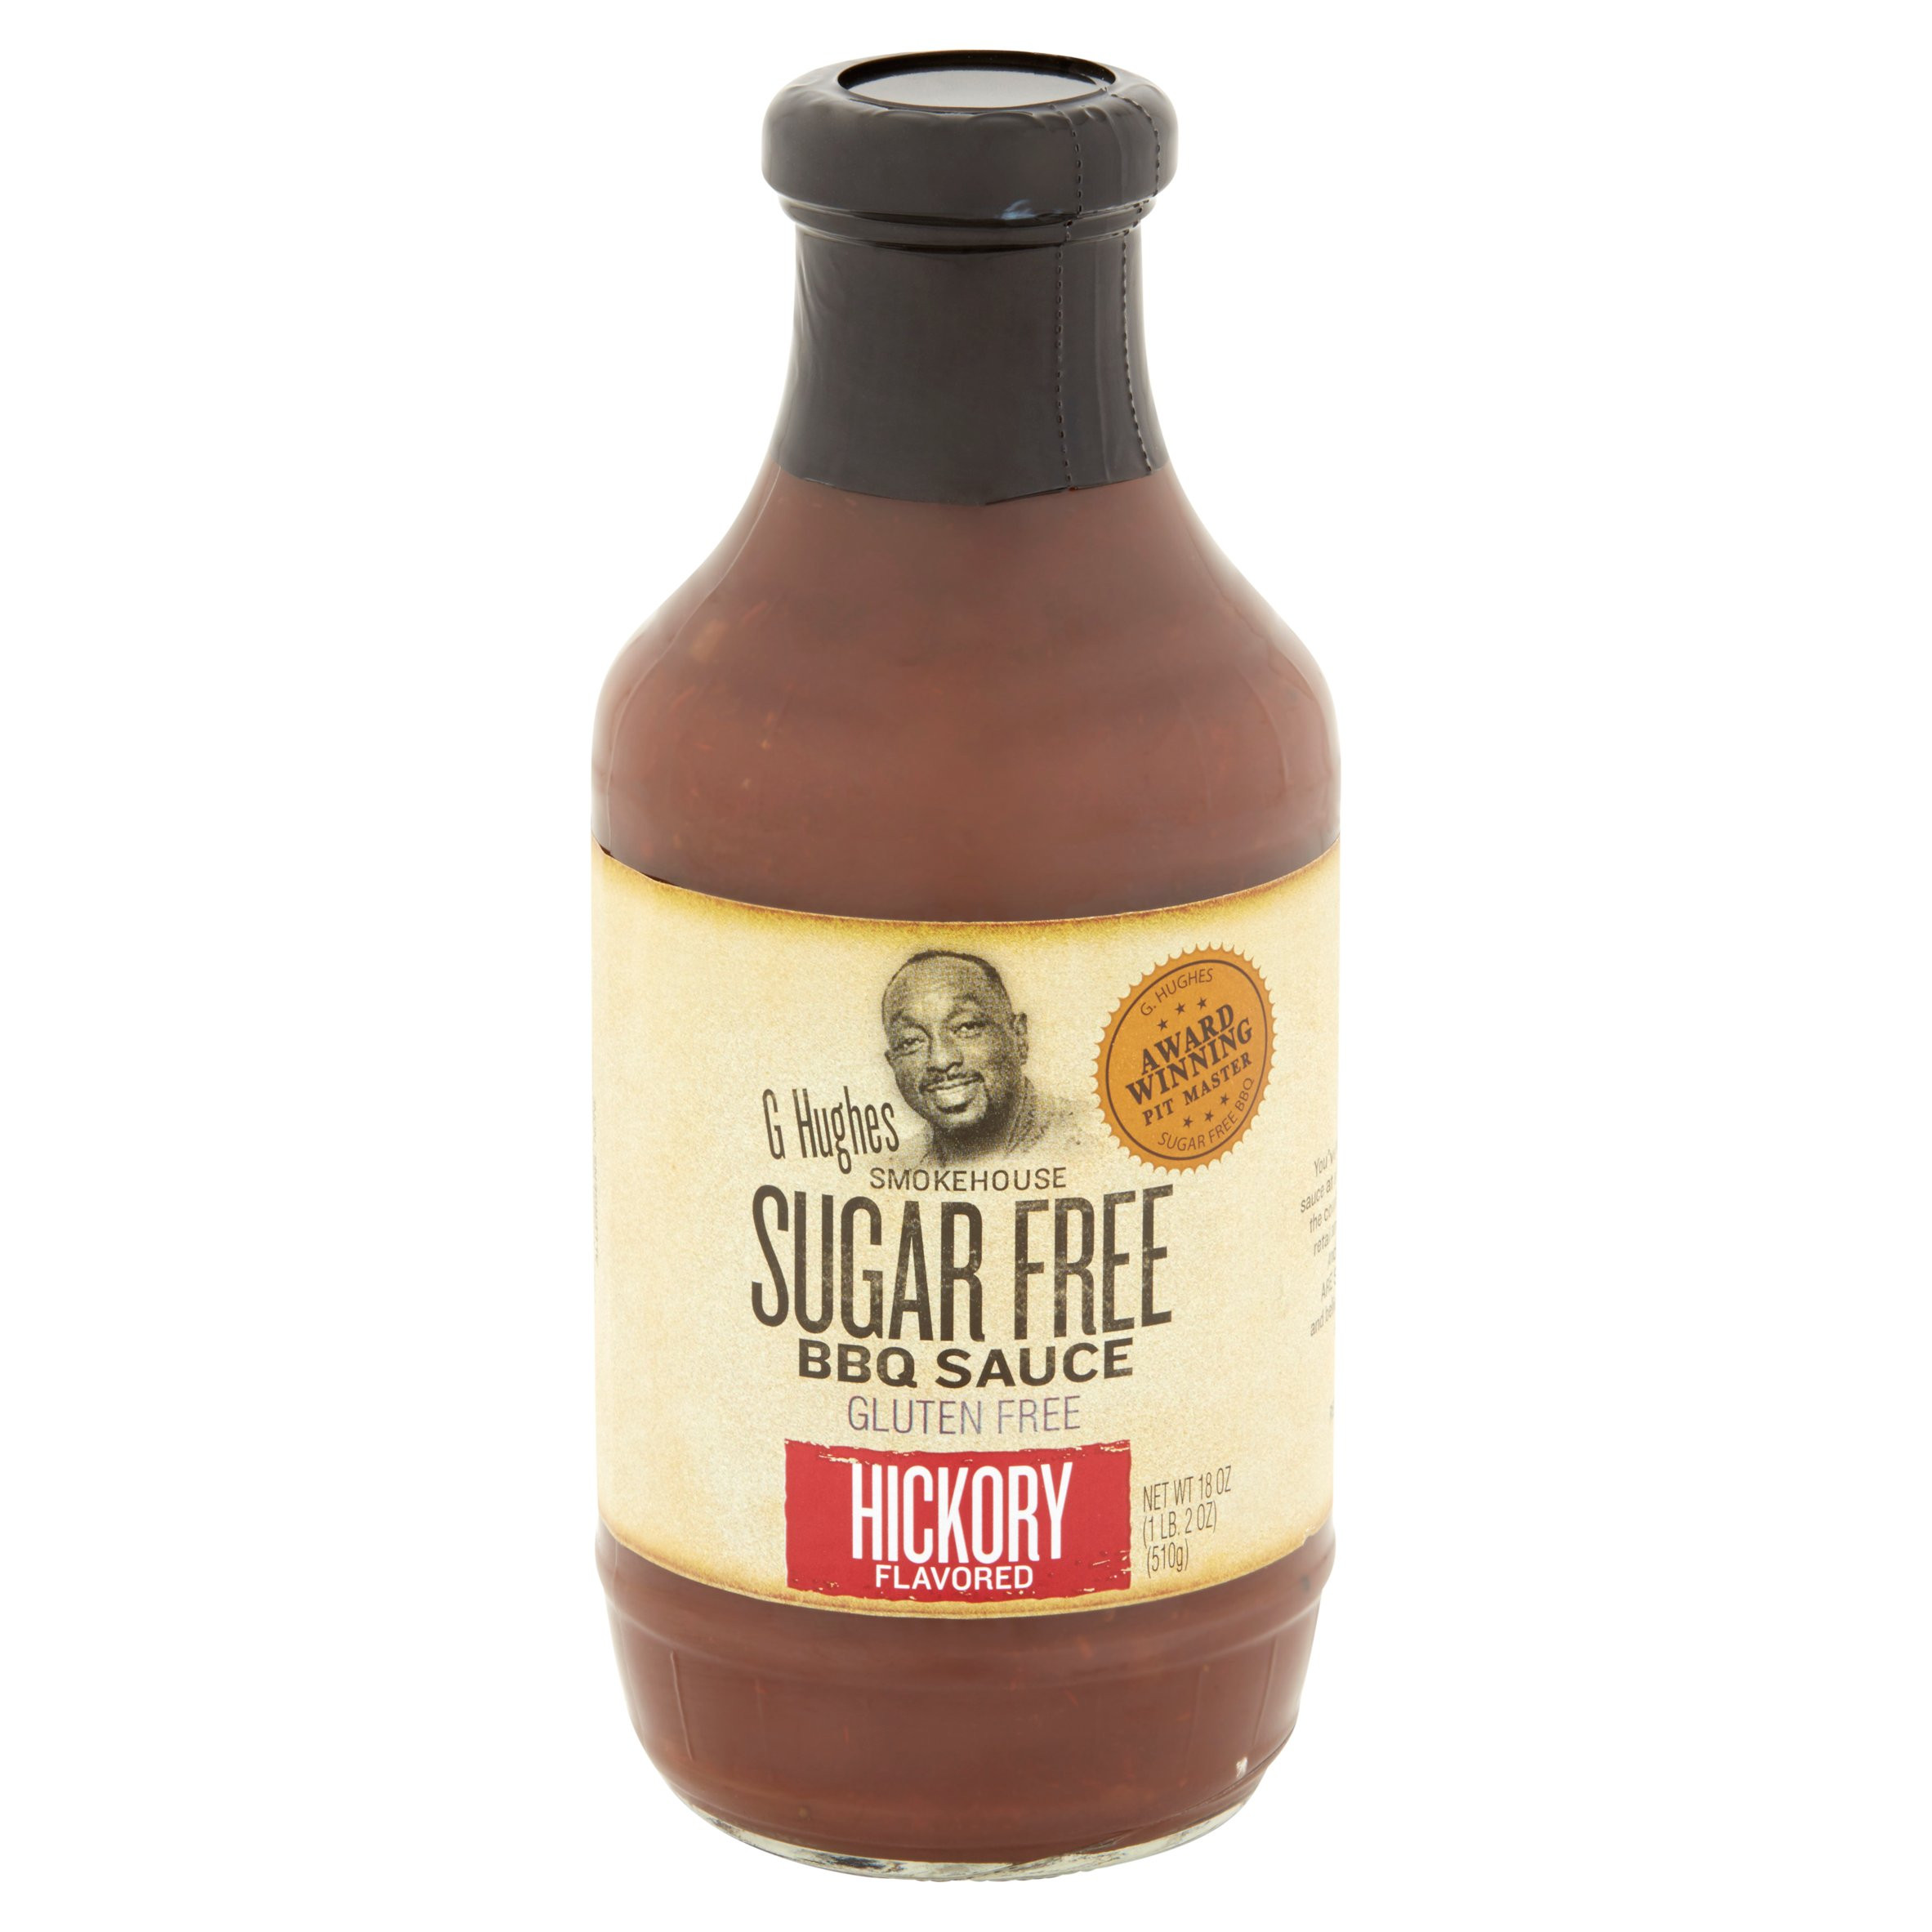 Organic Bbq Sauce Recipe
 best tasting organic bbq sauce